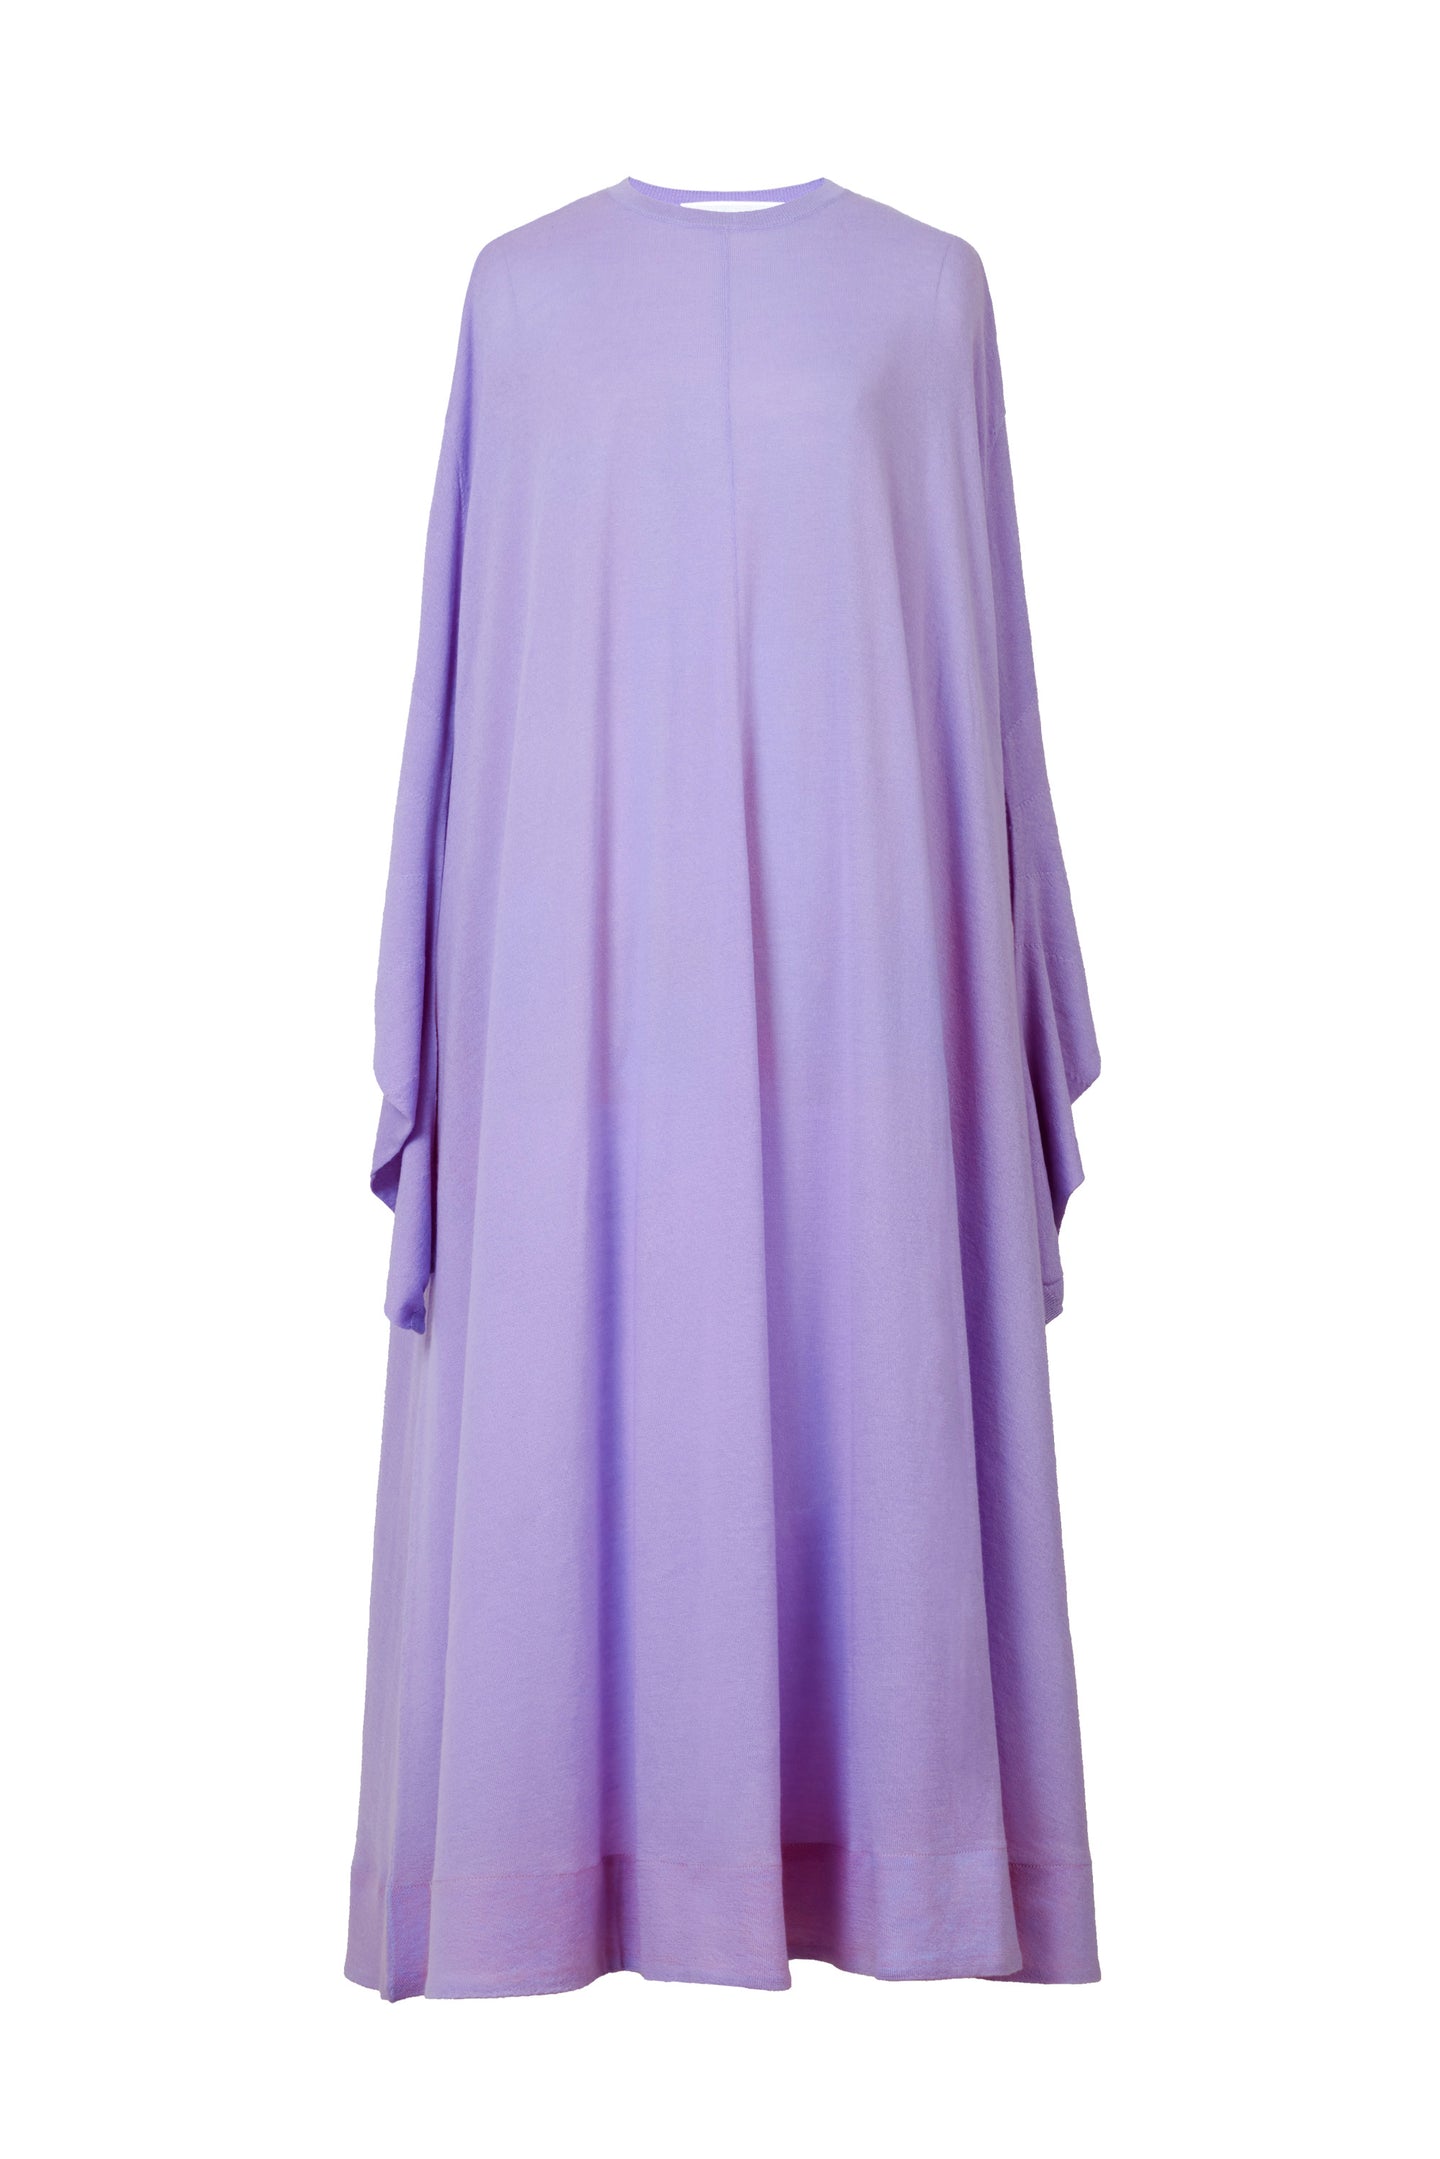 Cashmere Knit A Line Dress | Lilac